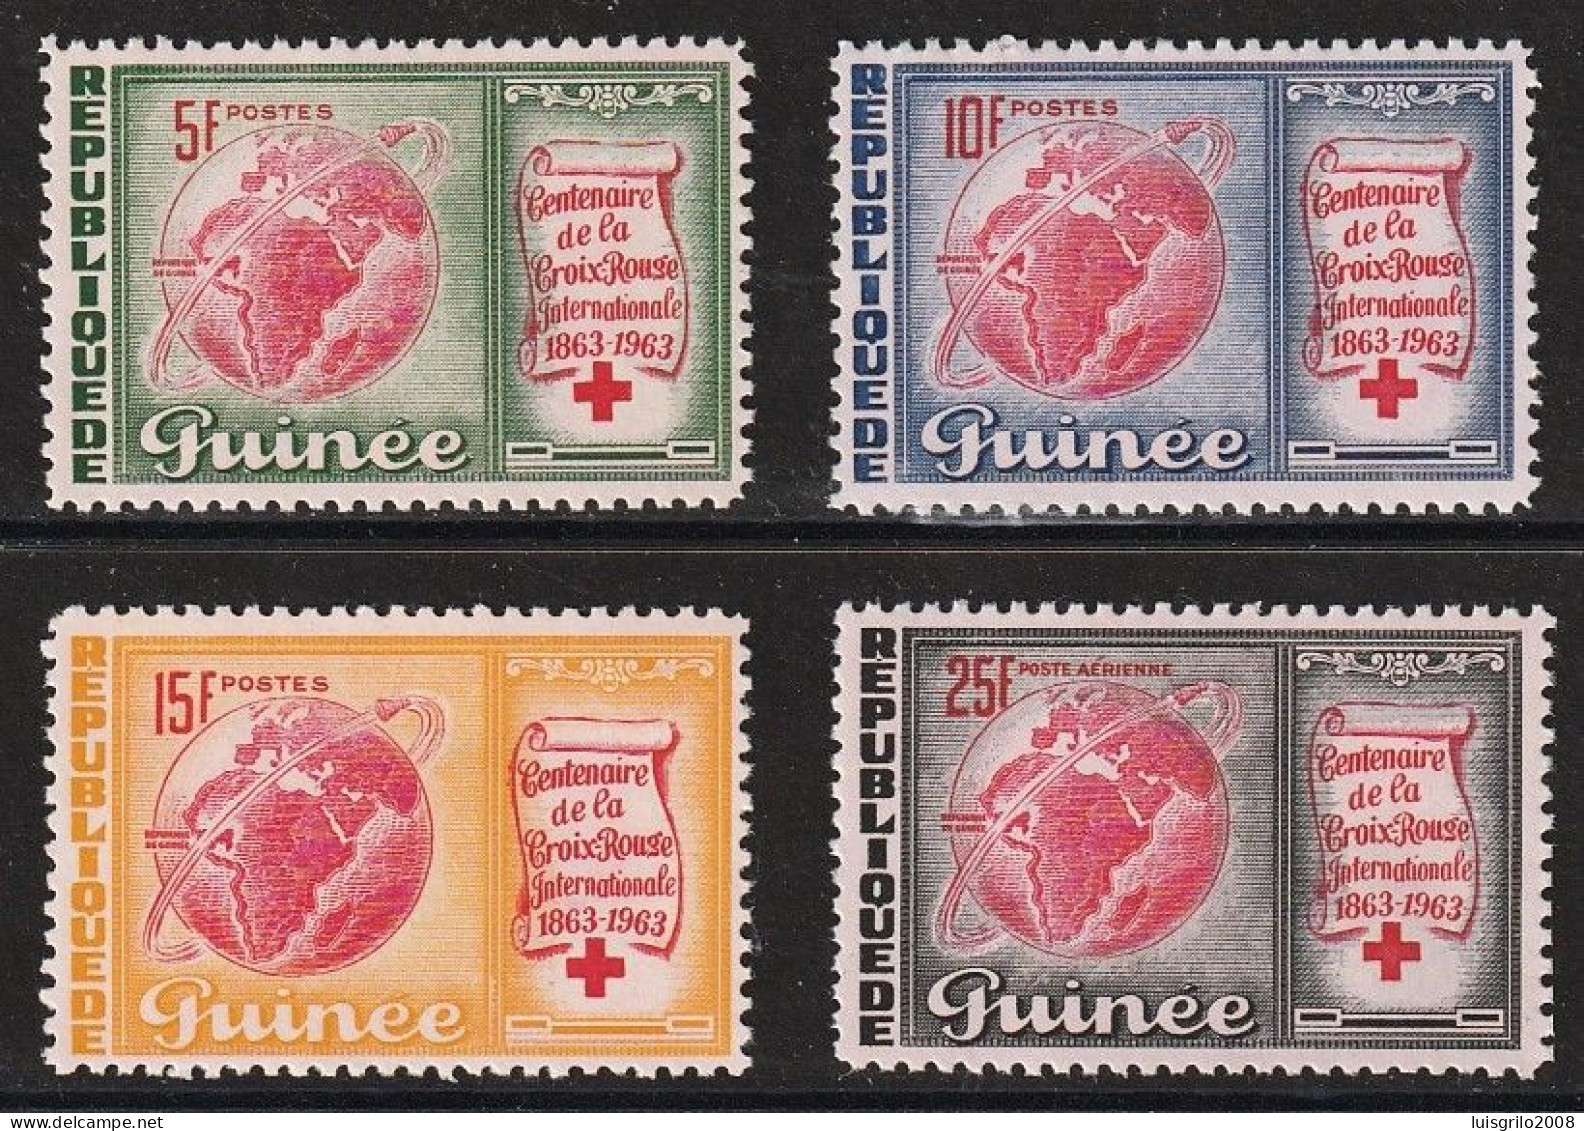 Republique De Guinee 1963 - Red Cross/ Centenaire De La Croix-Rouge -|- Série Compléte - MNH - Croix-Rouge